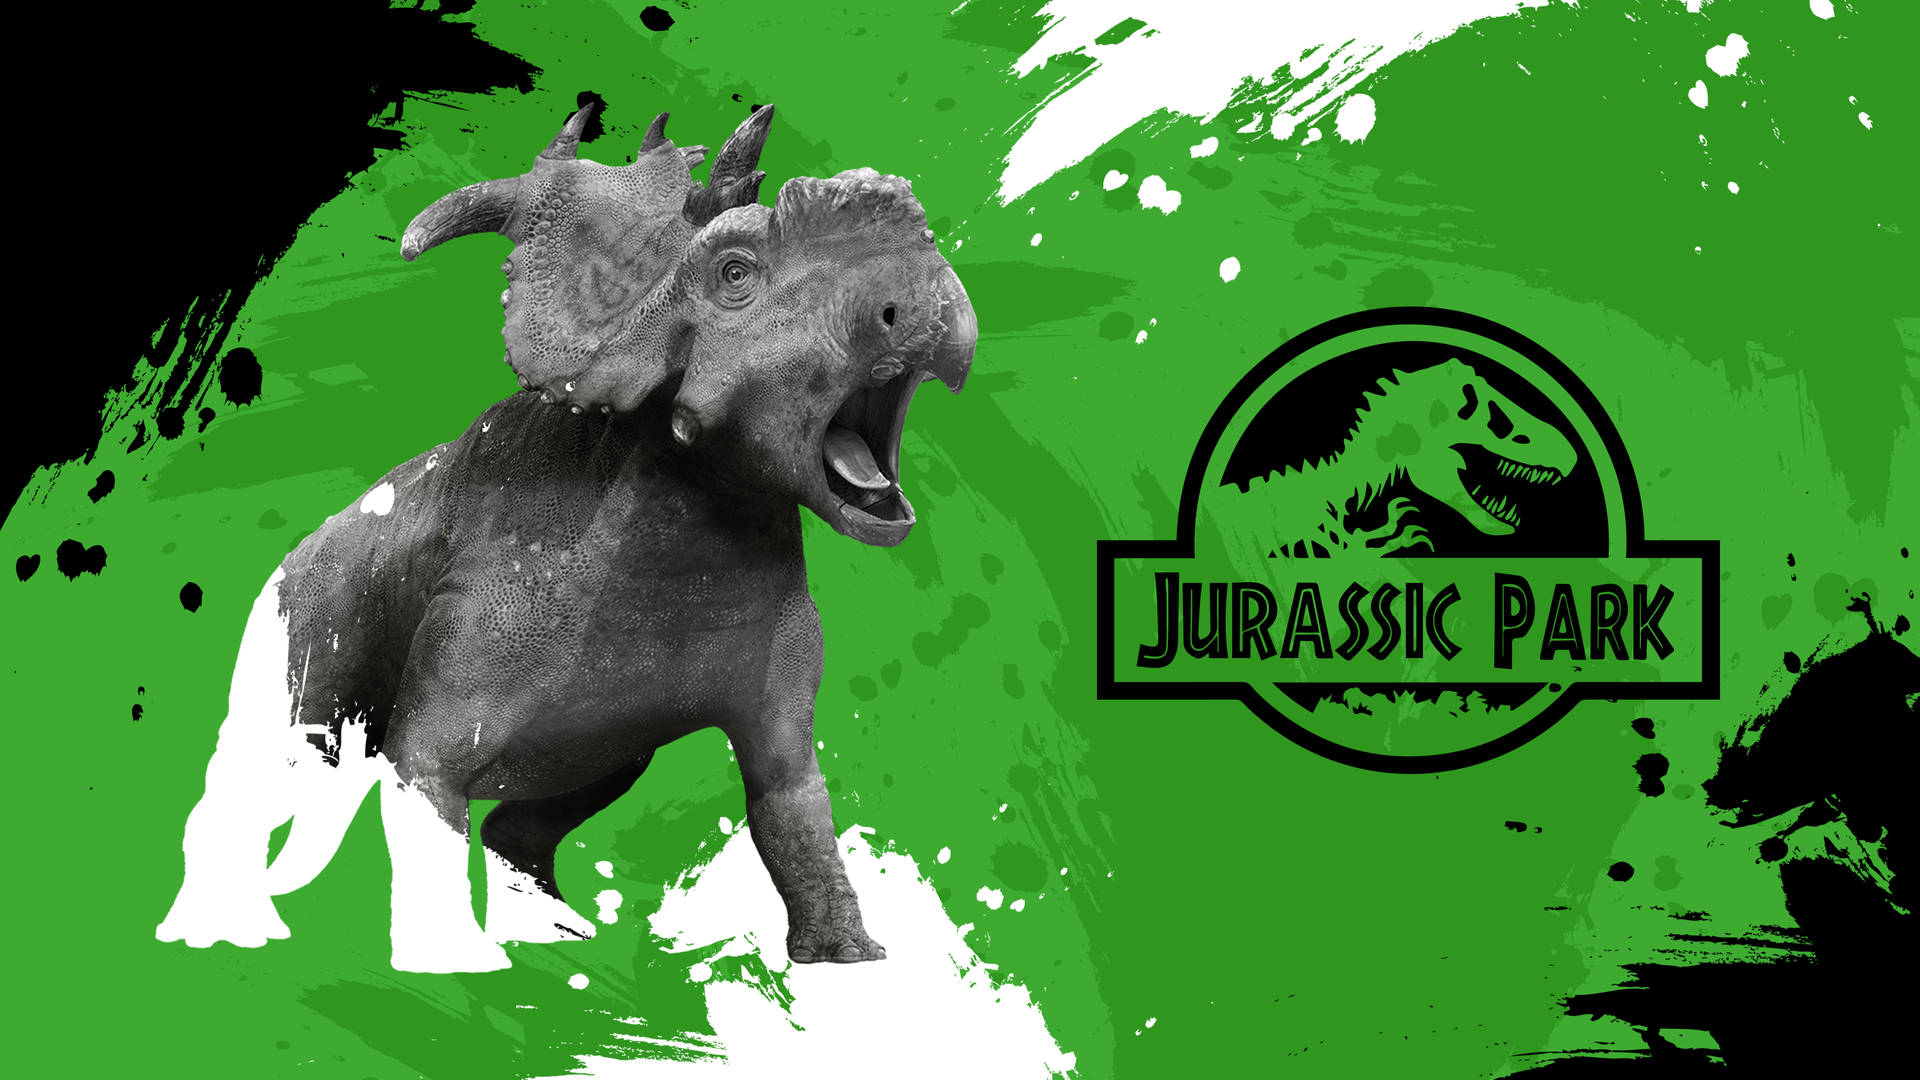 4k Resolution Image Of Jurassic Park Wallpaper